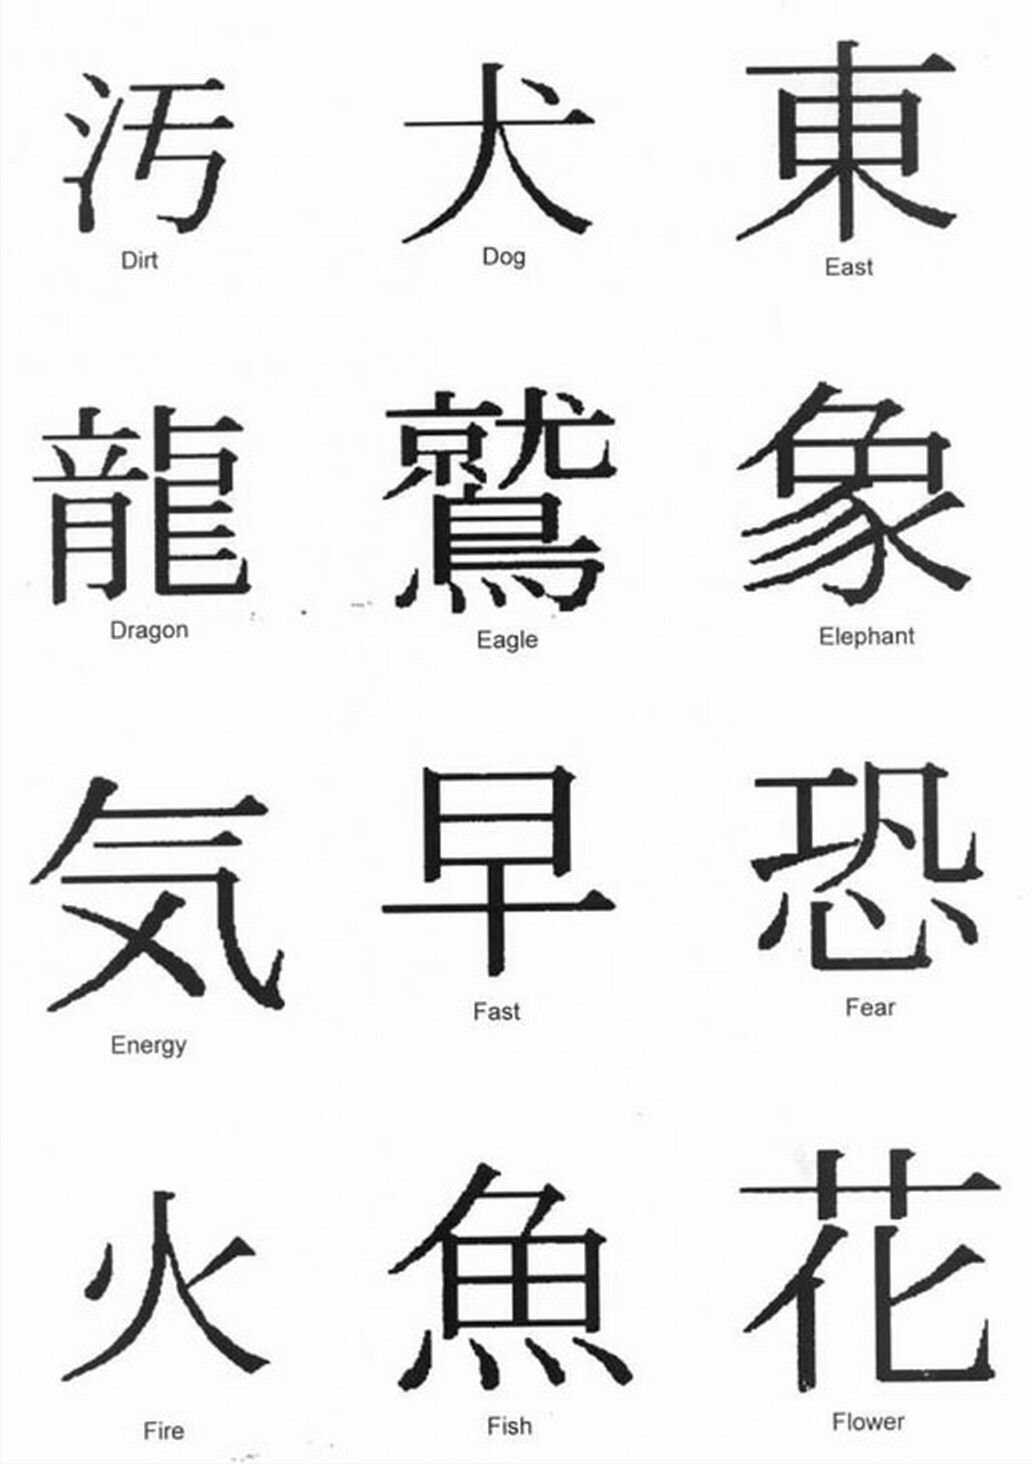 Китайские иероглифы картинки с переводом на русский